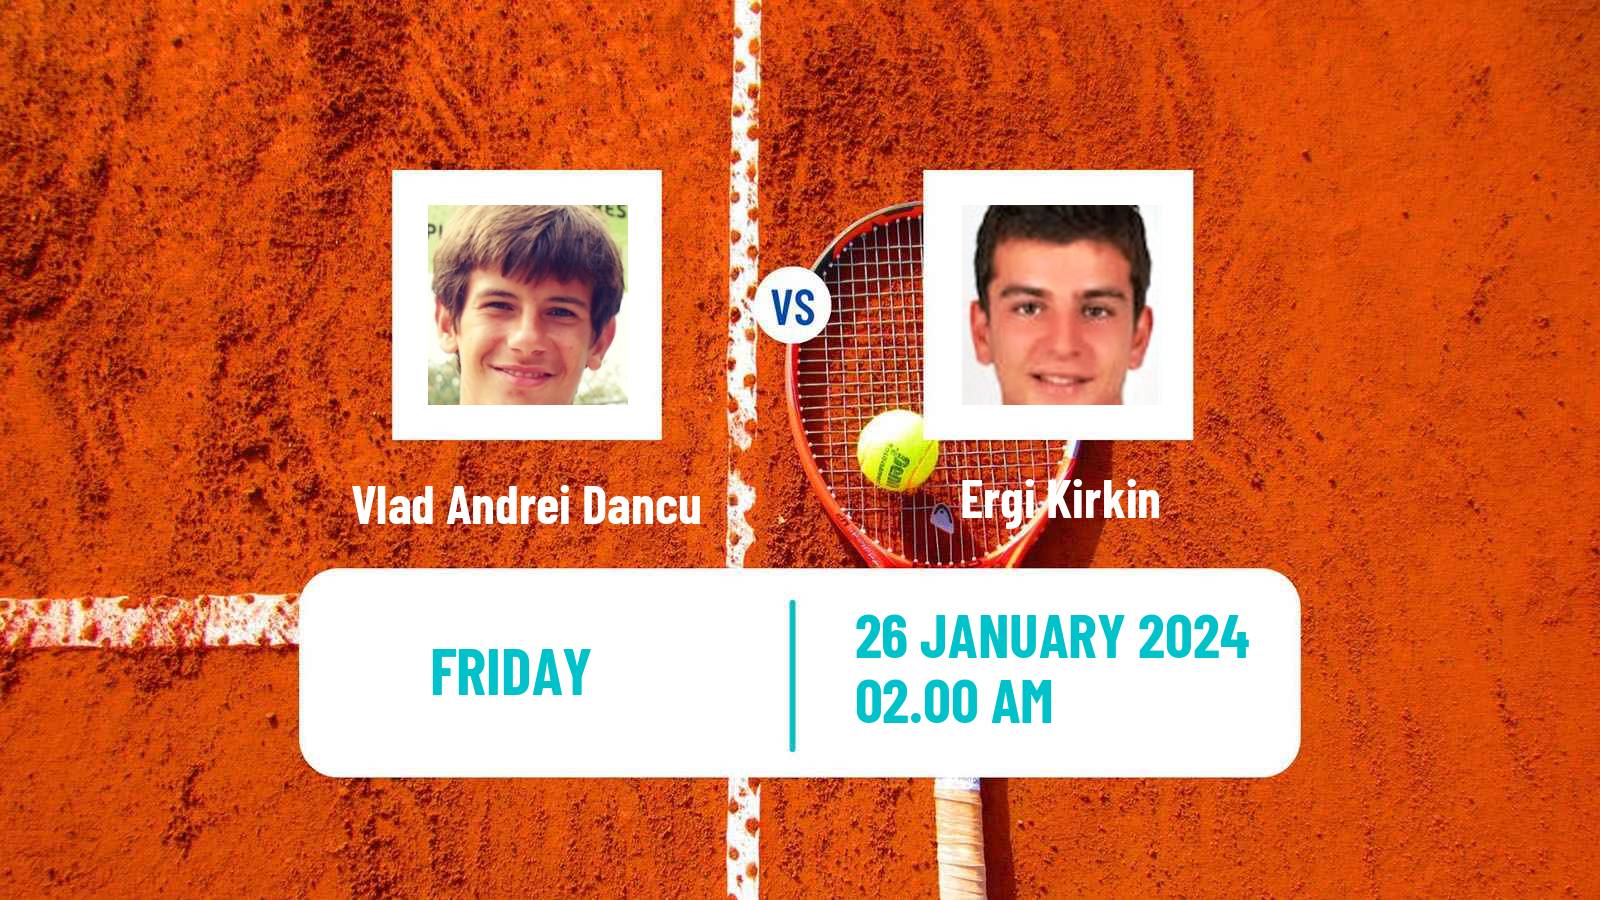 Tennis ITF M15 Antalya 3 Men Vlad Andrei Dancu - Ergi Kirkin